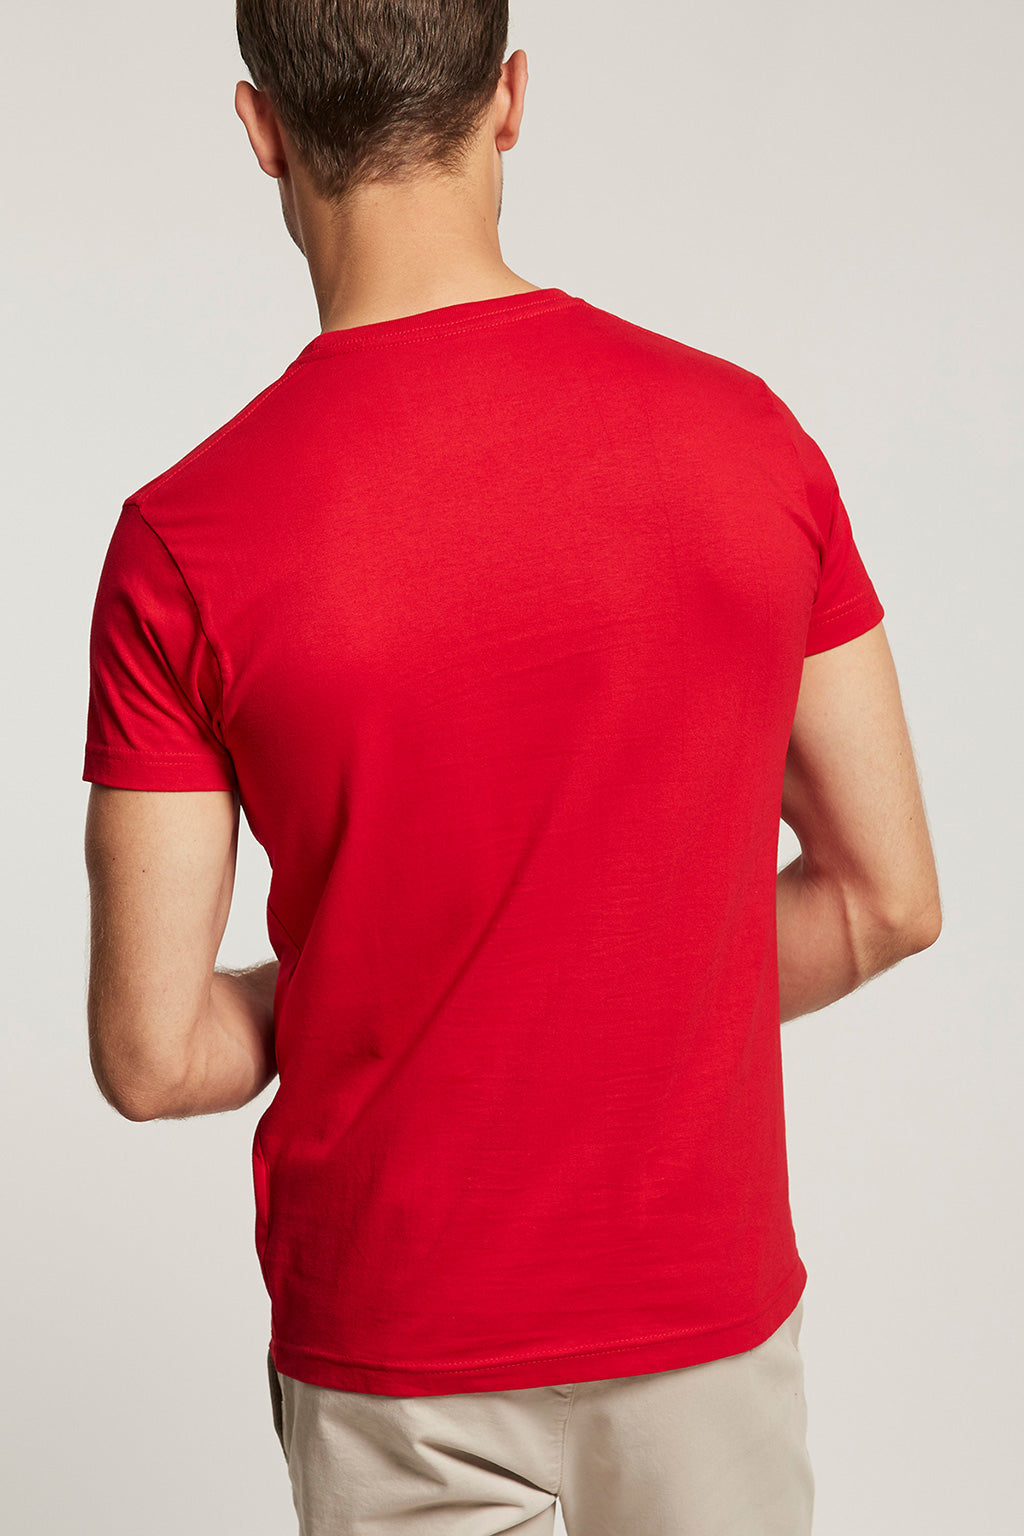 Camiseta roja con estampación  | HOMBRE  | POLO CLUB